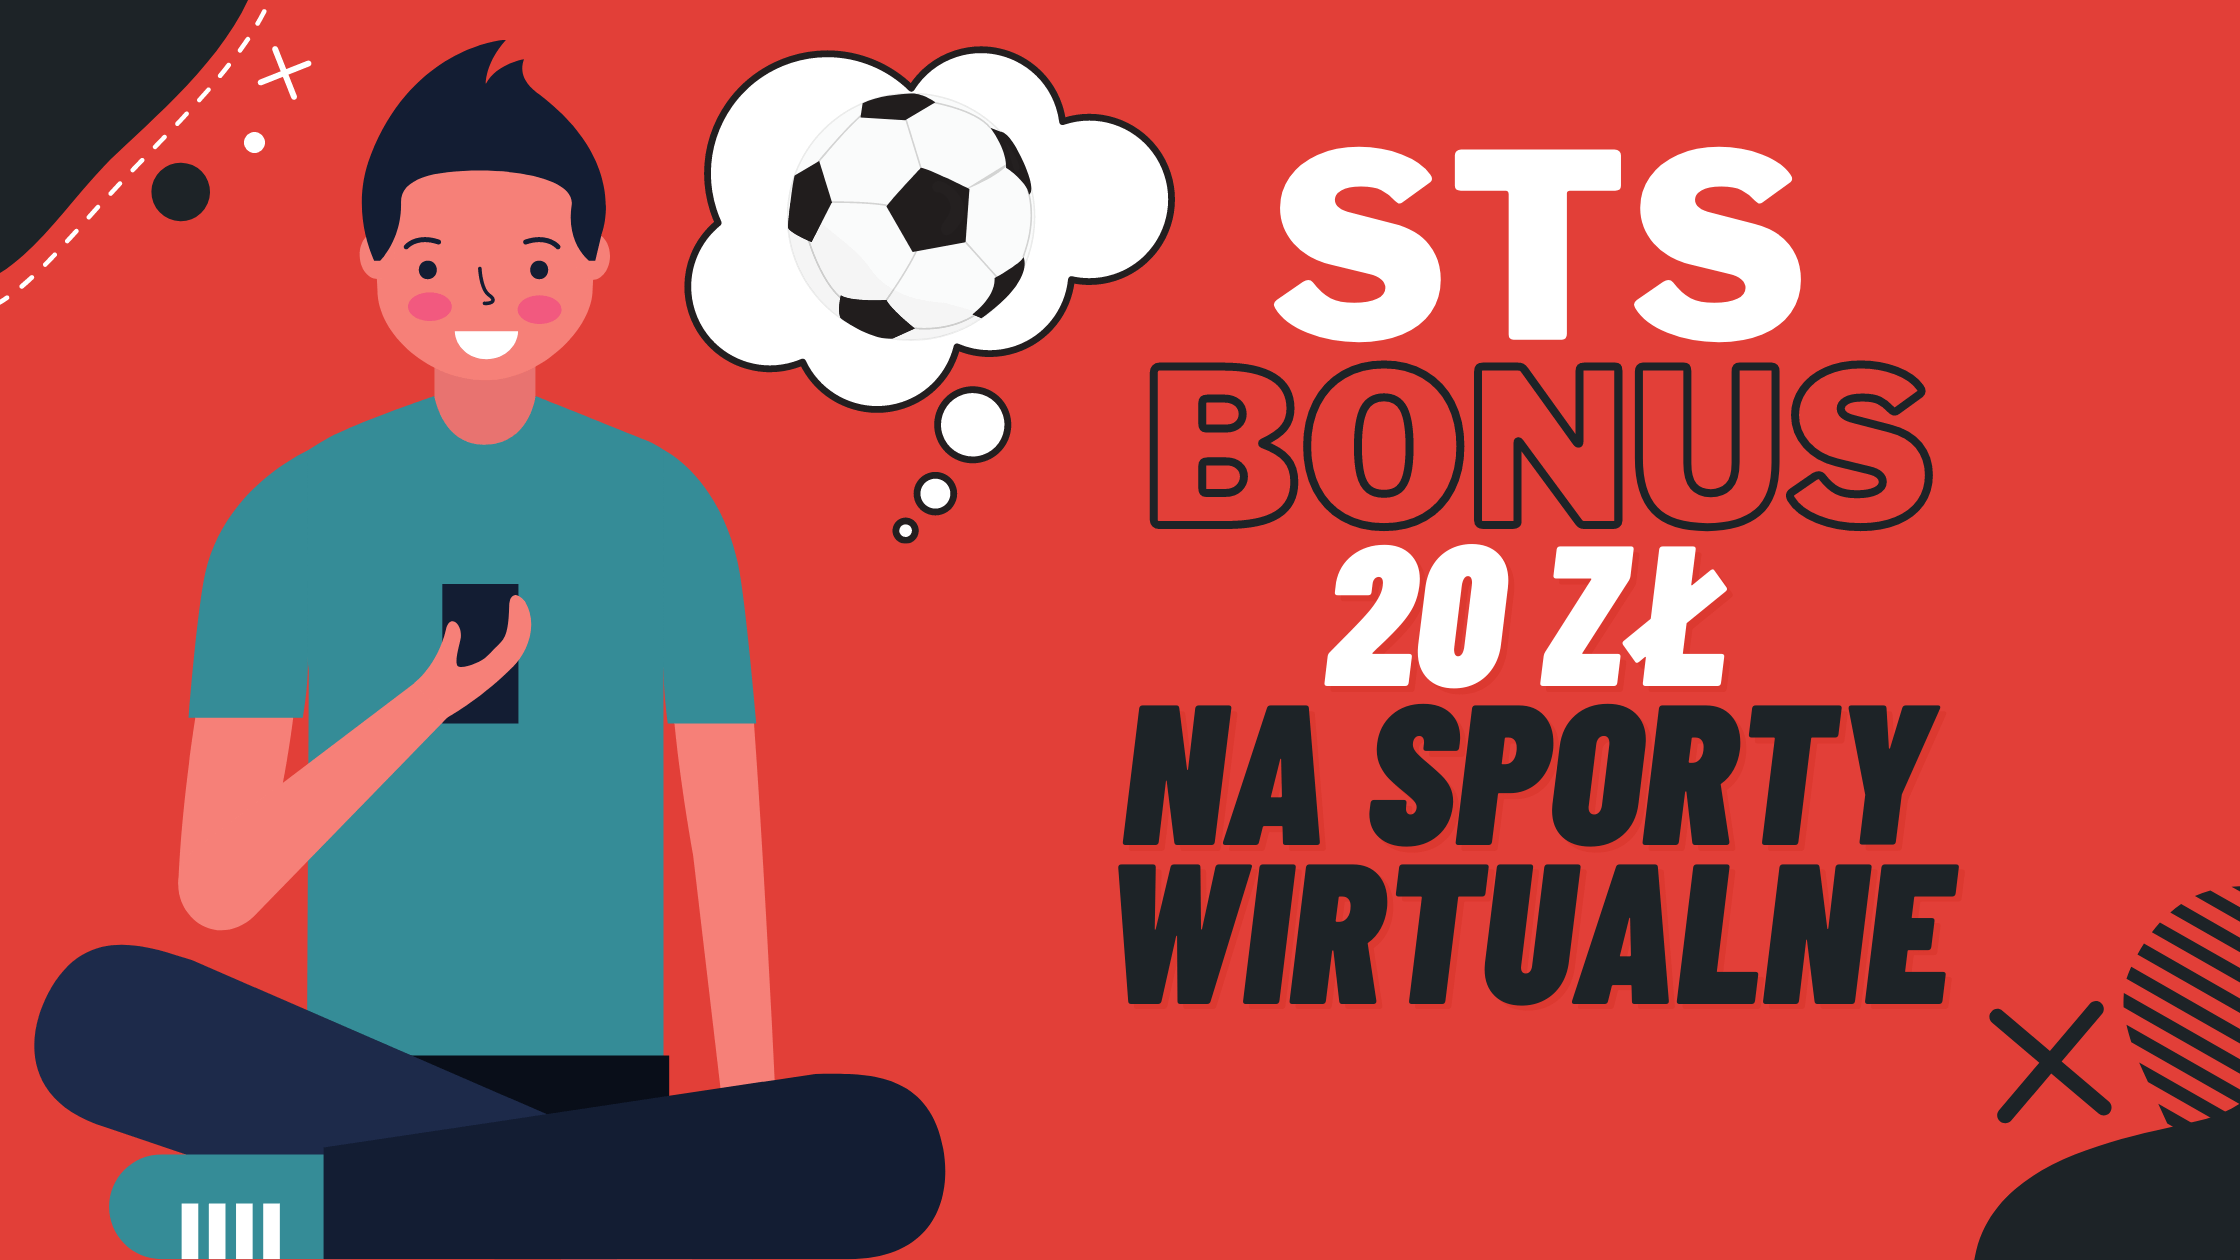 STS bonus 20 zł na sporty wirtualne